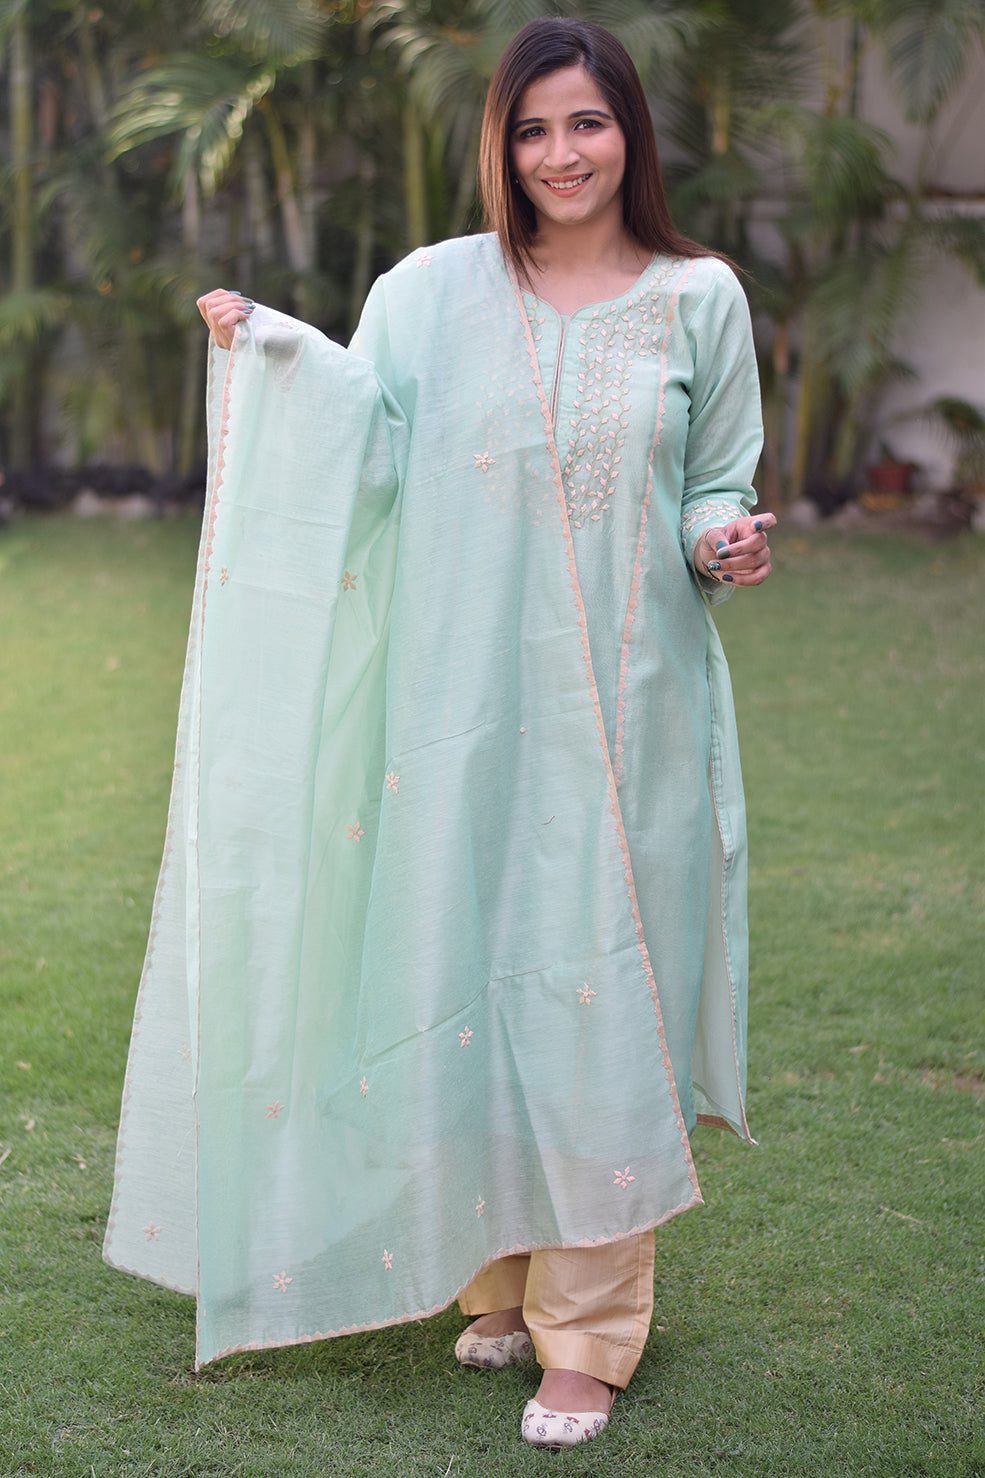 A woman wearing a sea green Aari work kurta with intricate embroidery